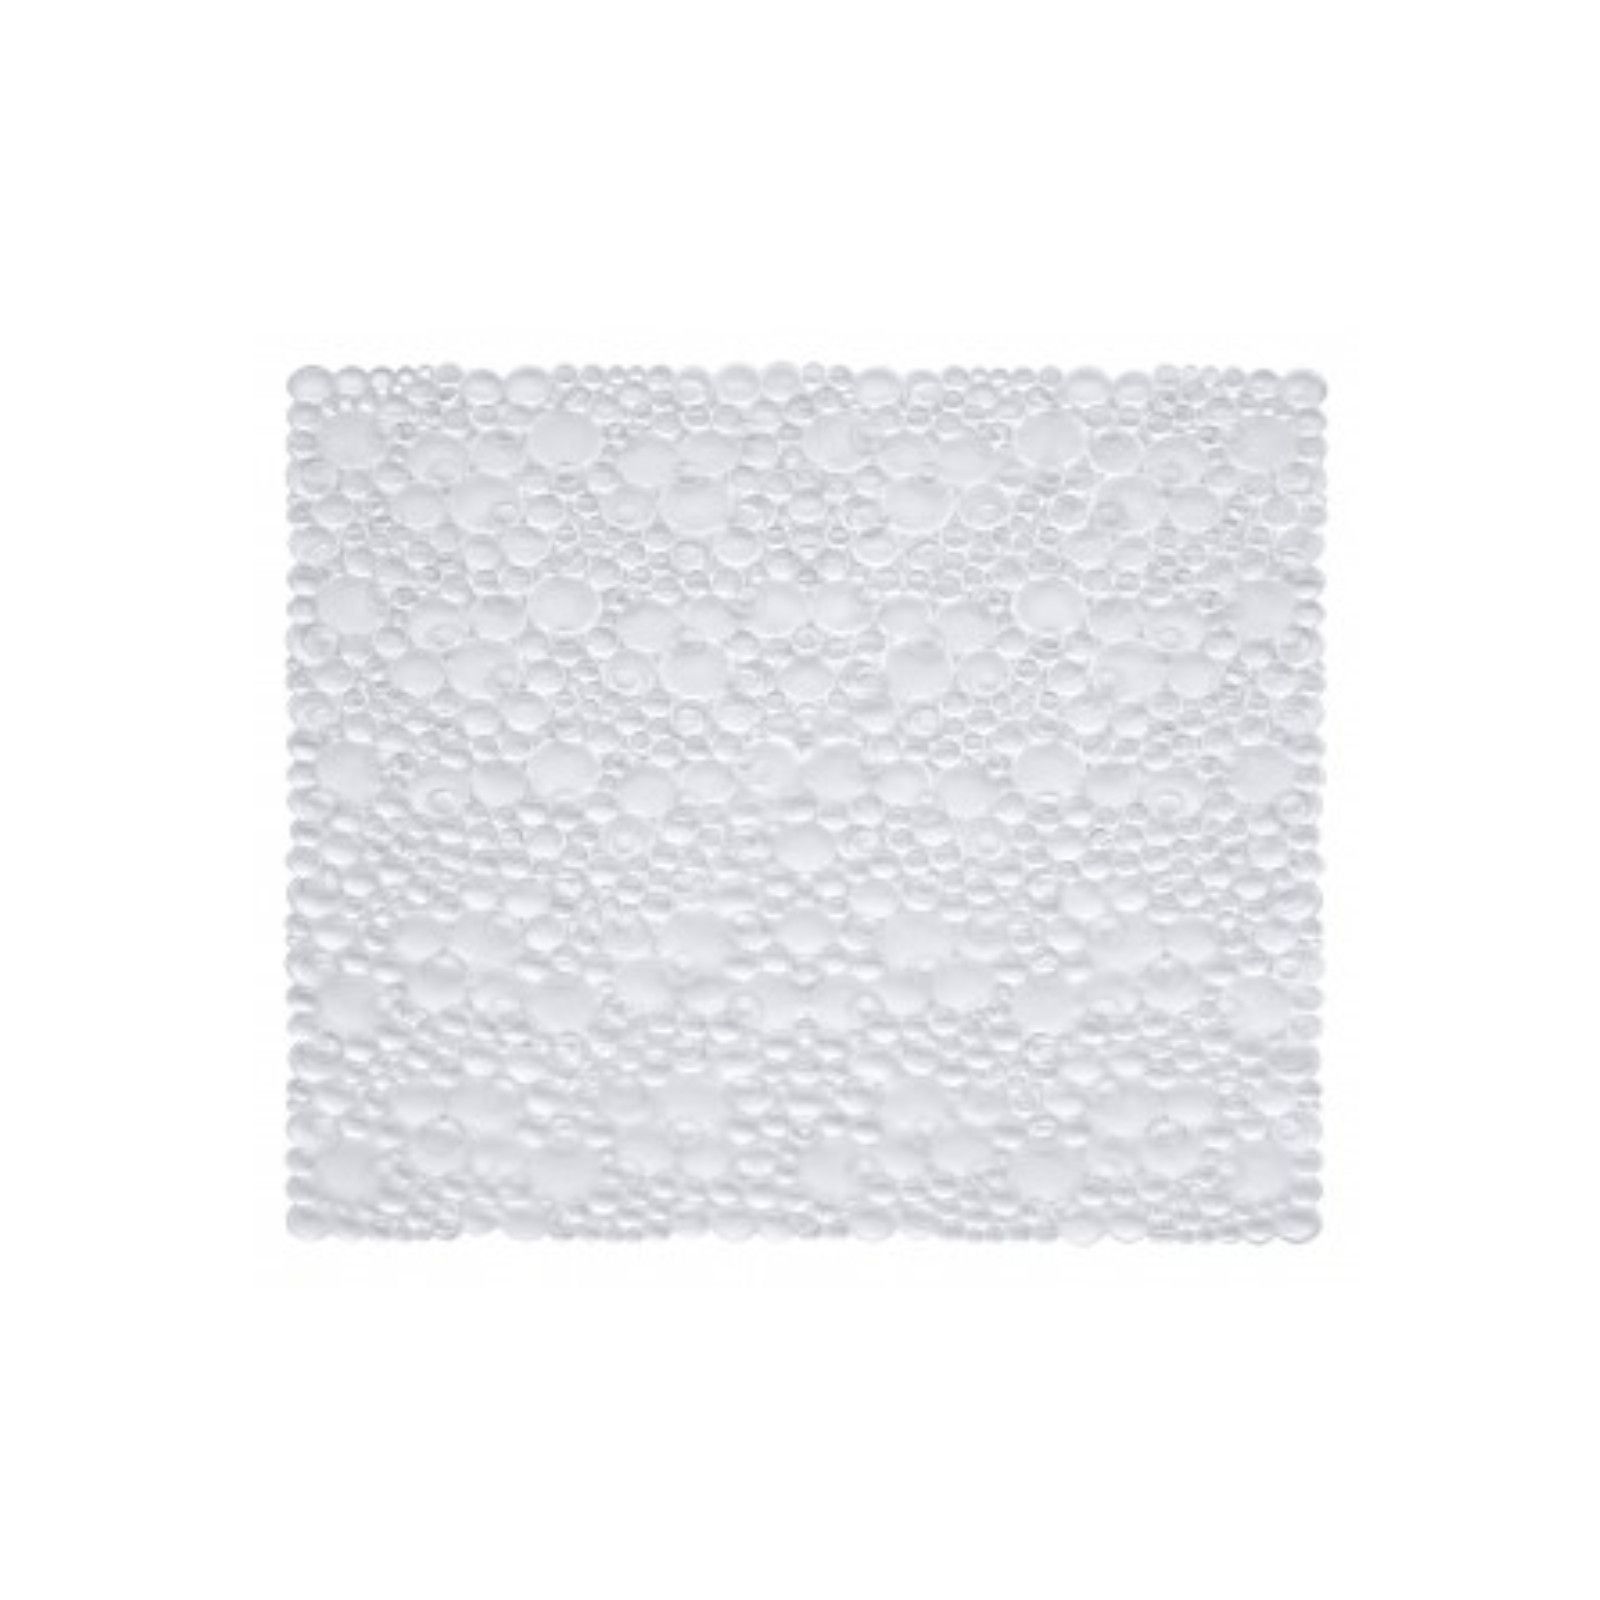 Tappeto antiscivolo 54 x 54 cm con bolle per doccia/vasca bianco